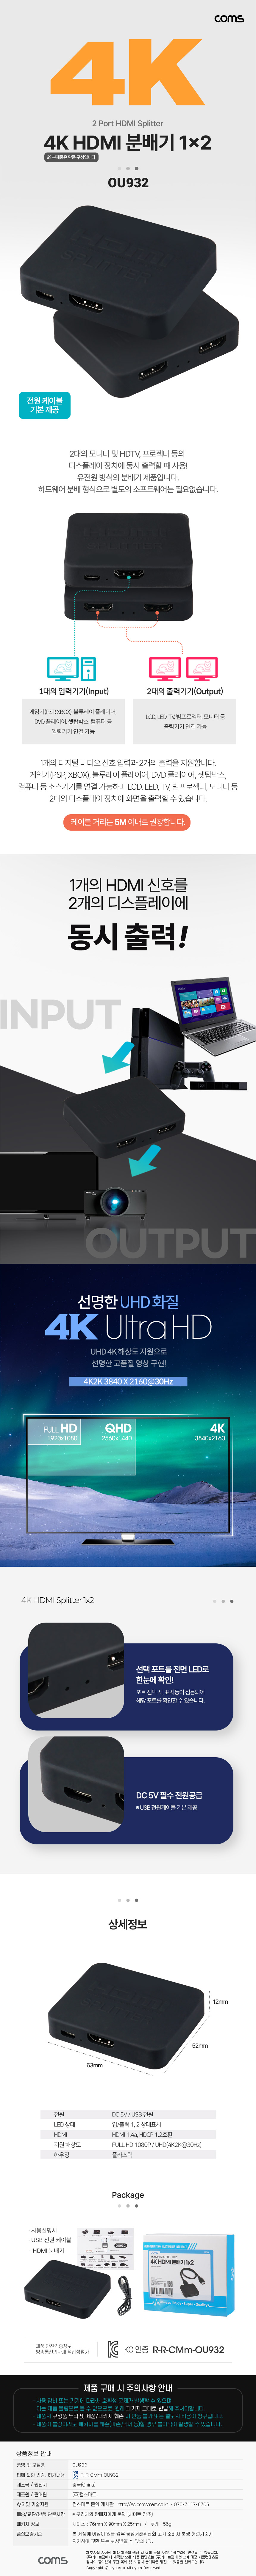 HDMI й1:2 ̴ 4K@30Hz UHD USB 